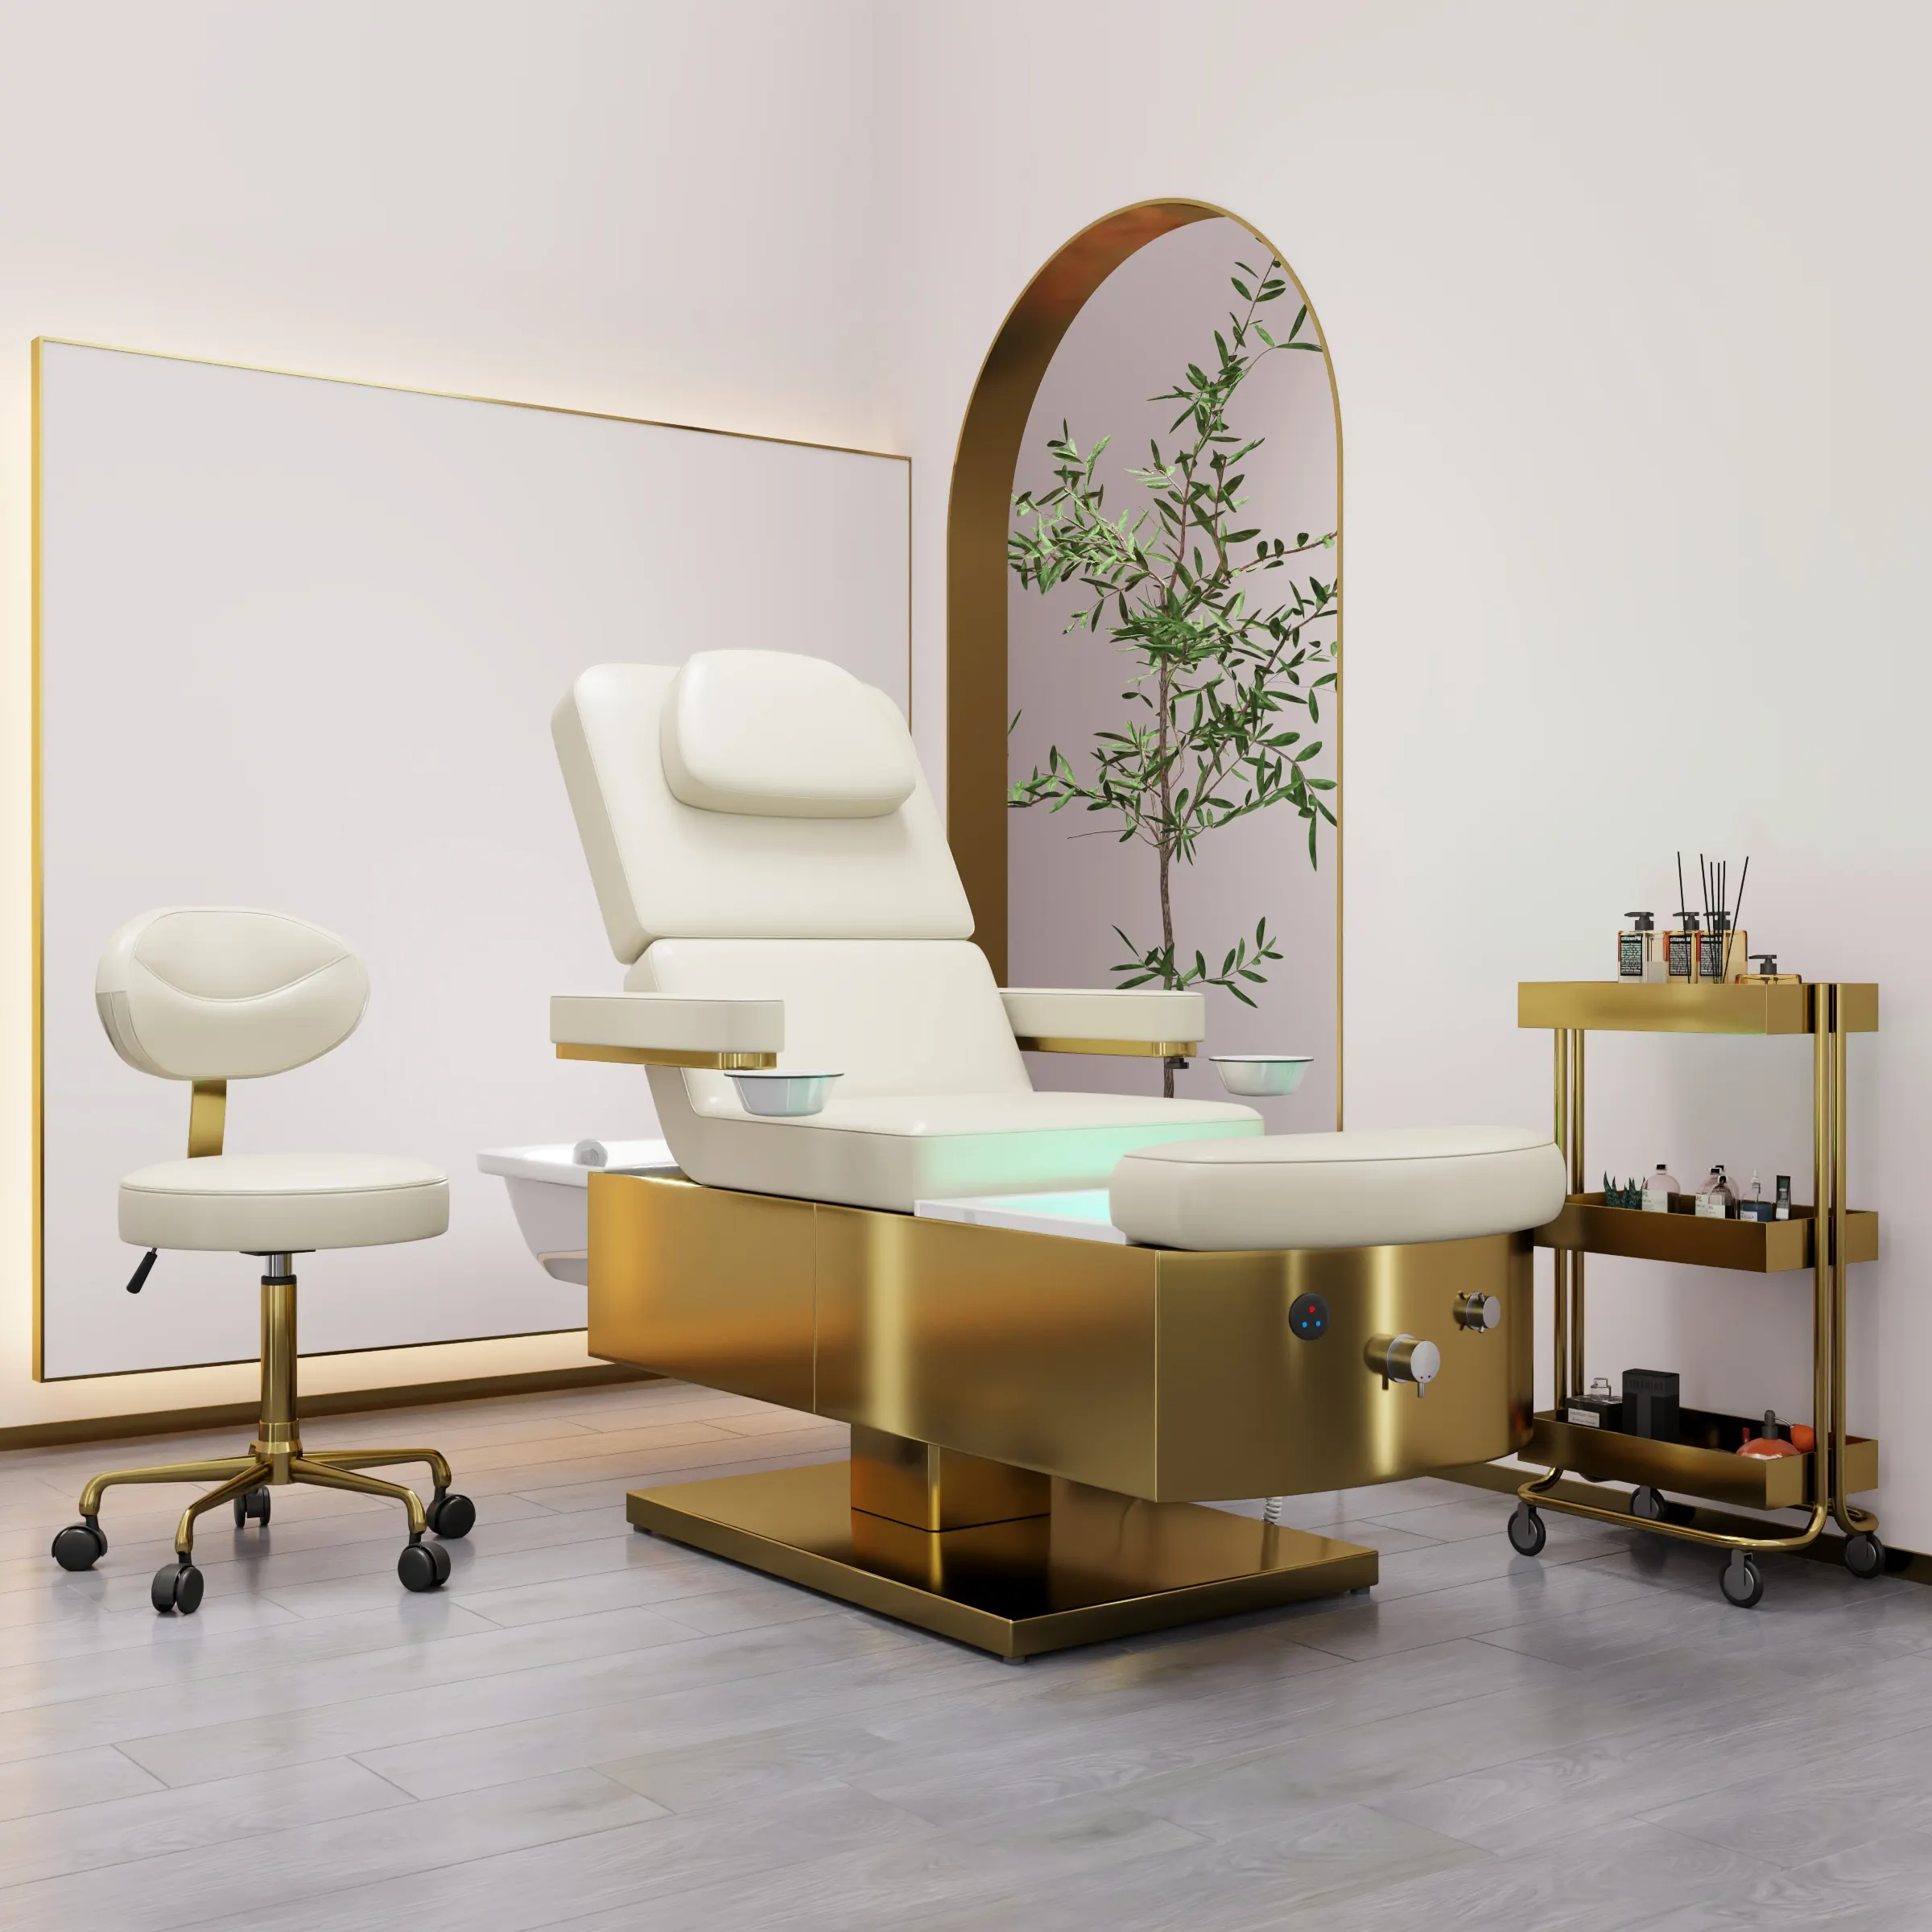 HOCHEY Salon spa circulación de agua Lavado de cabello Masaje Silla Pedicura champú cama